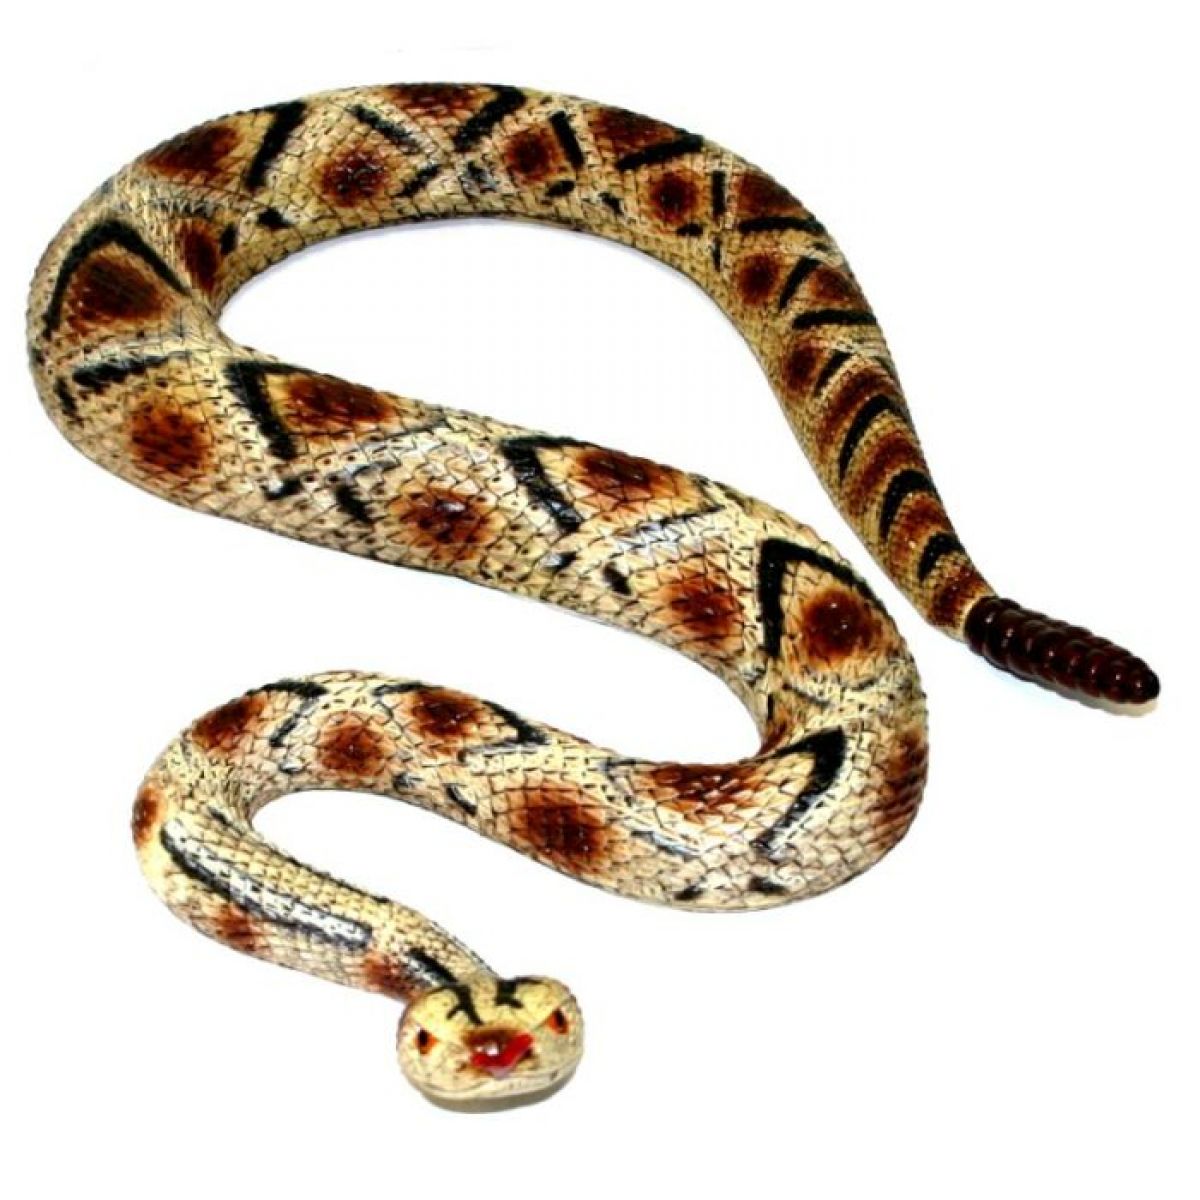 Had Chřestýš